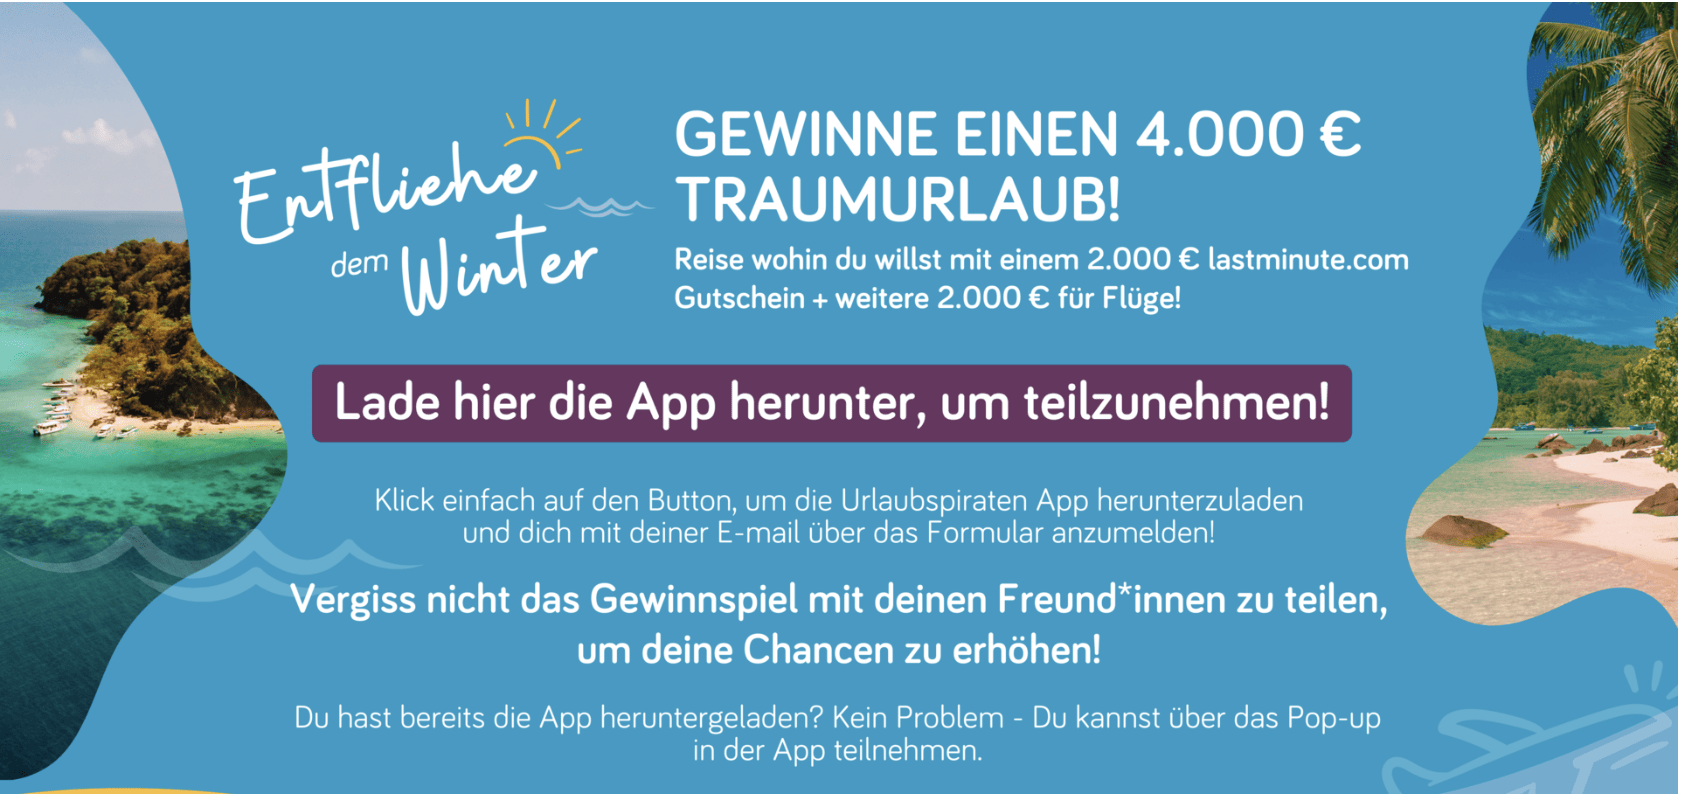 case_Urlaubspiraten-Gewinnspiel 4.000 € Traumurlaub